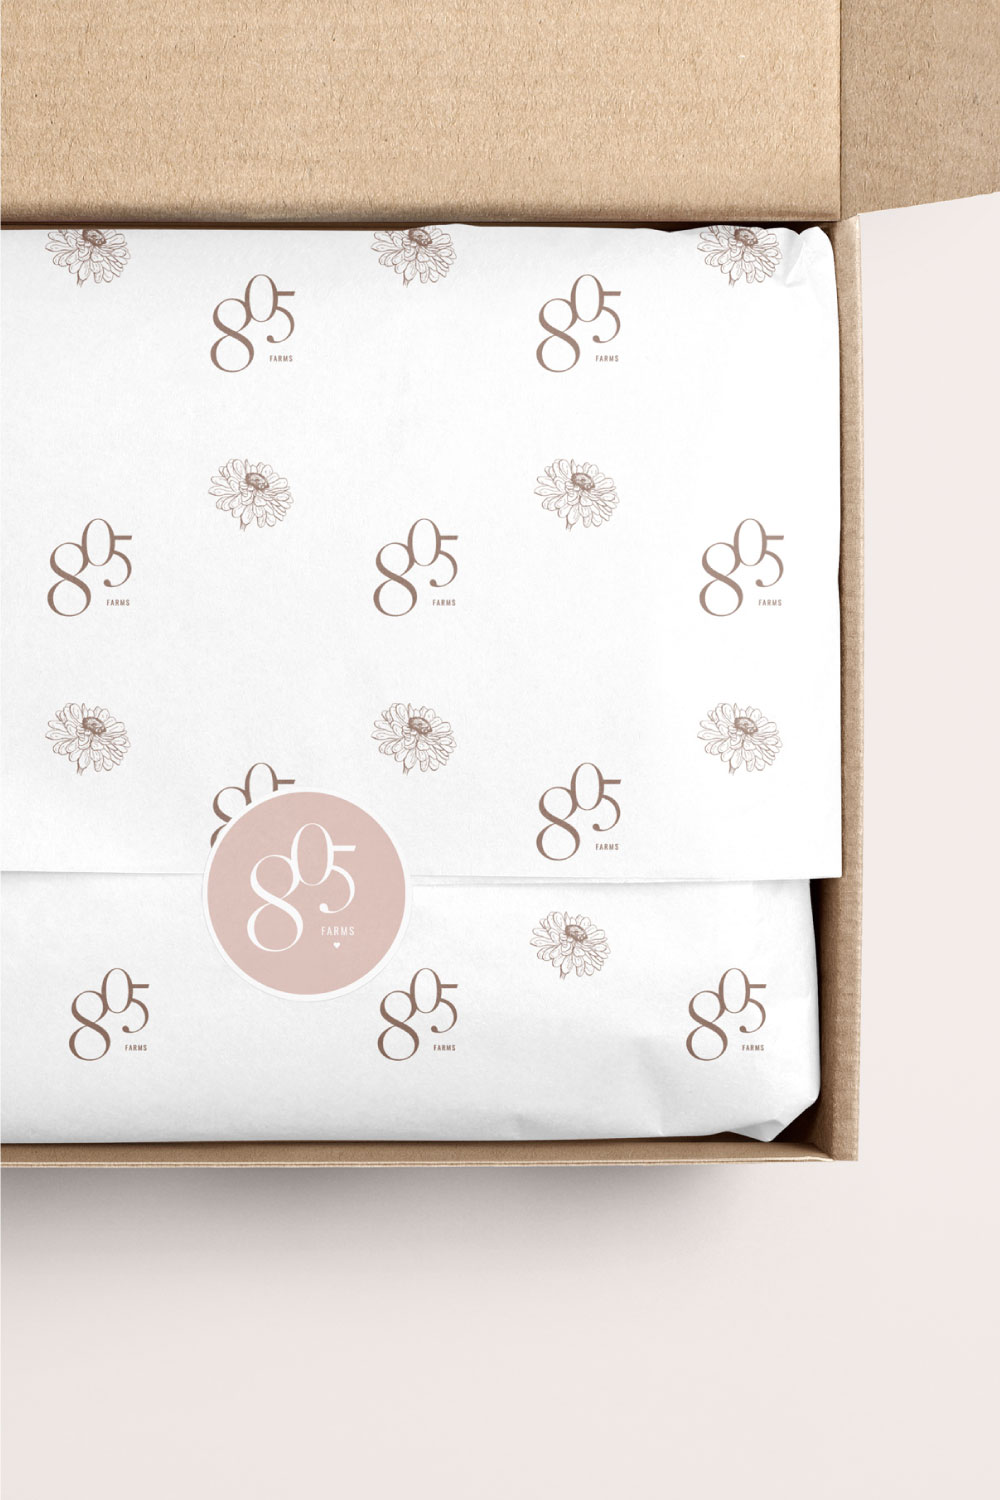 floral pattern tissue paper design for Pinterest